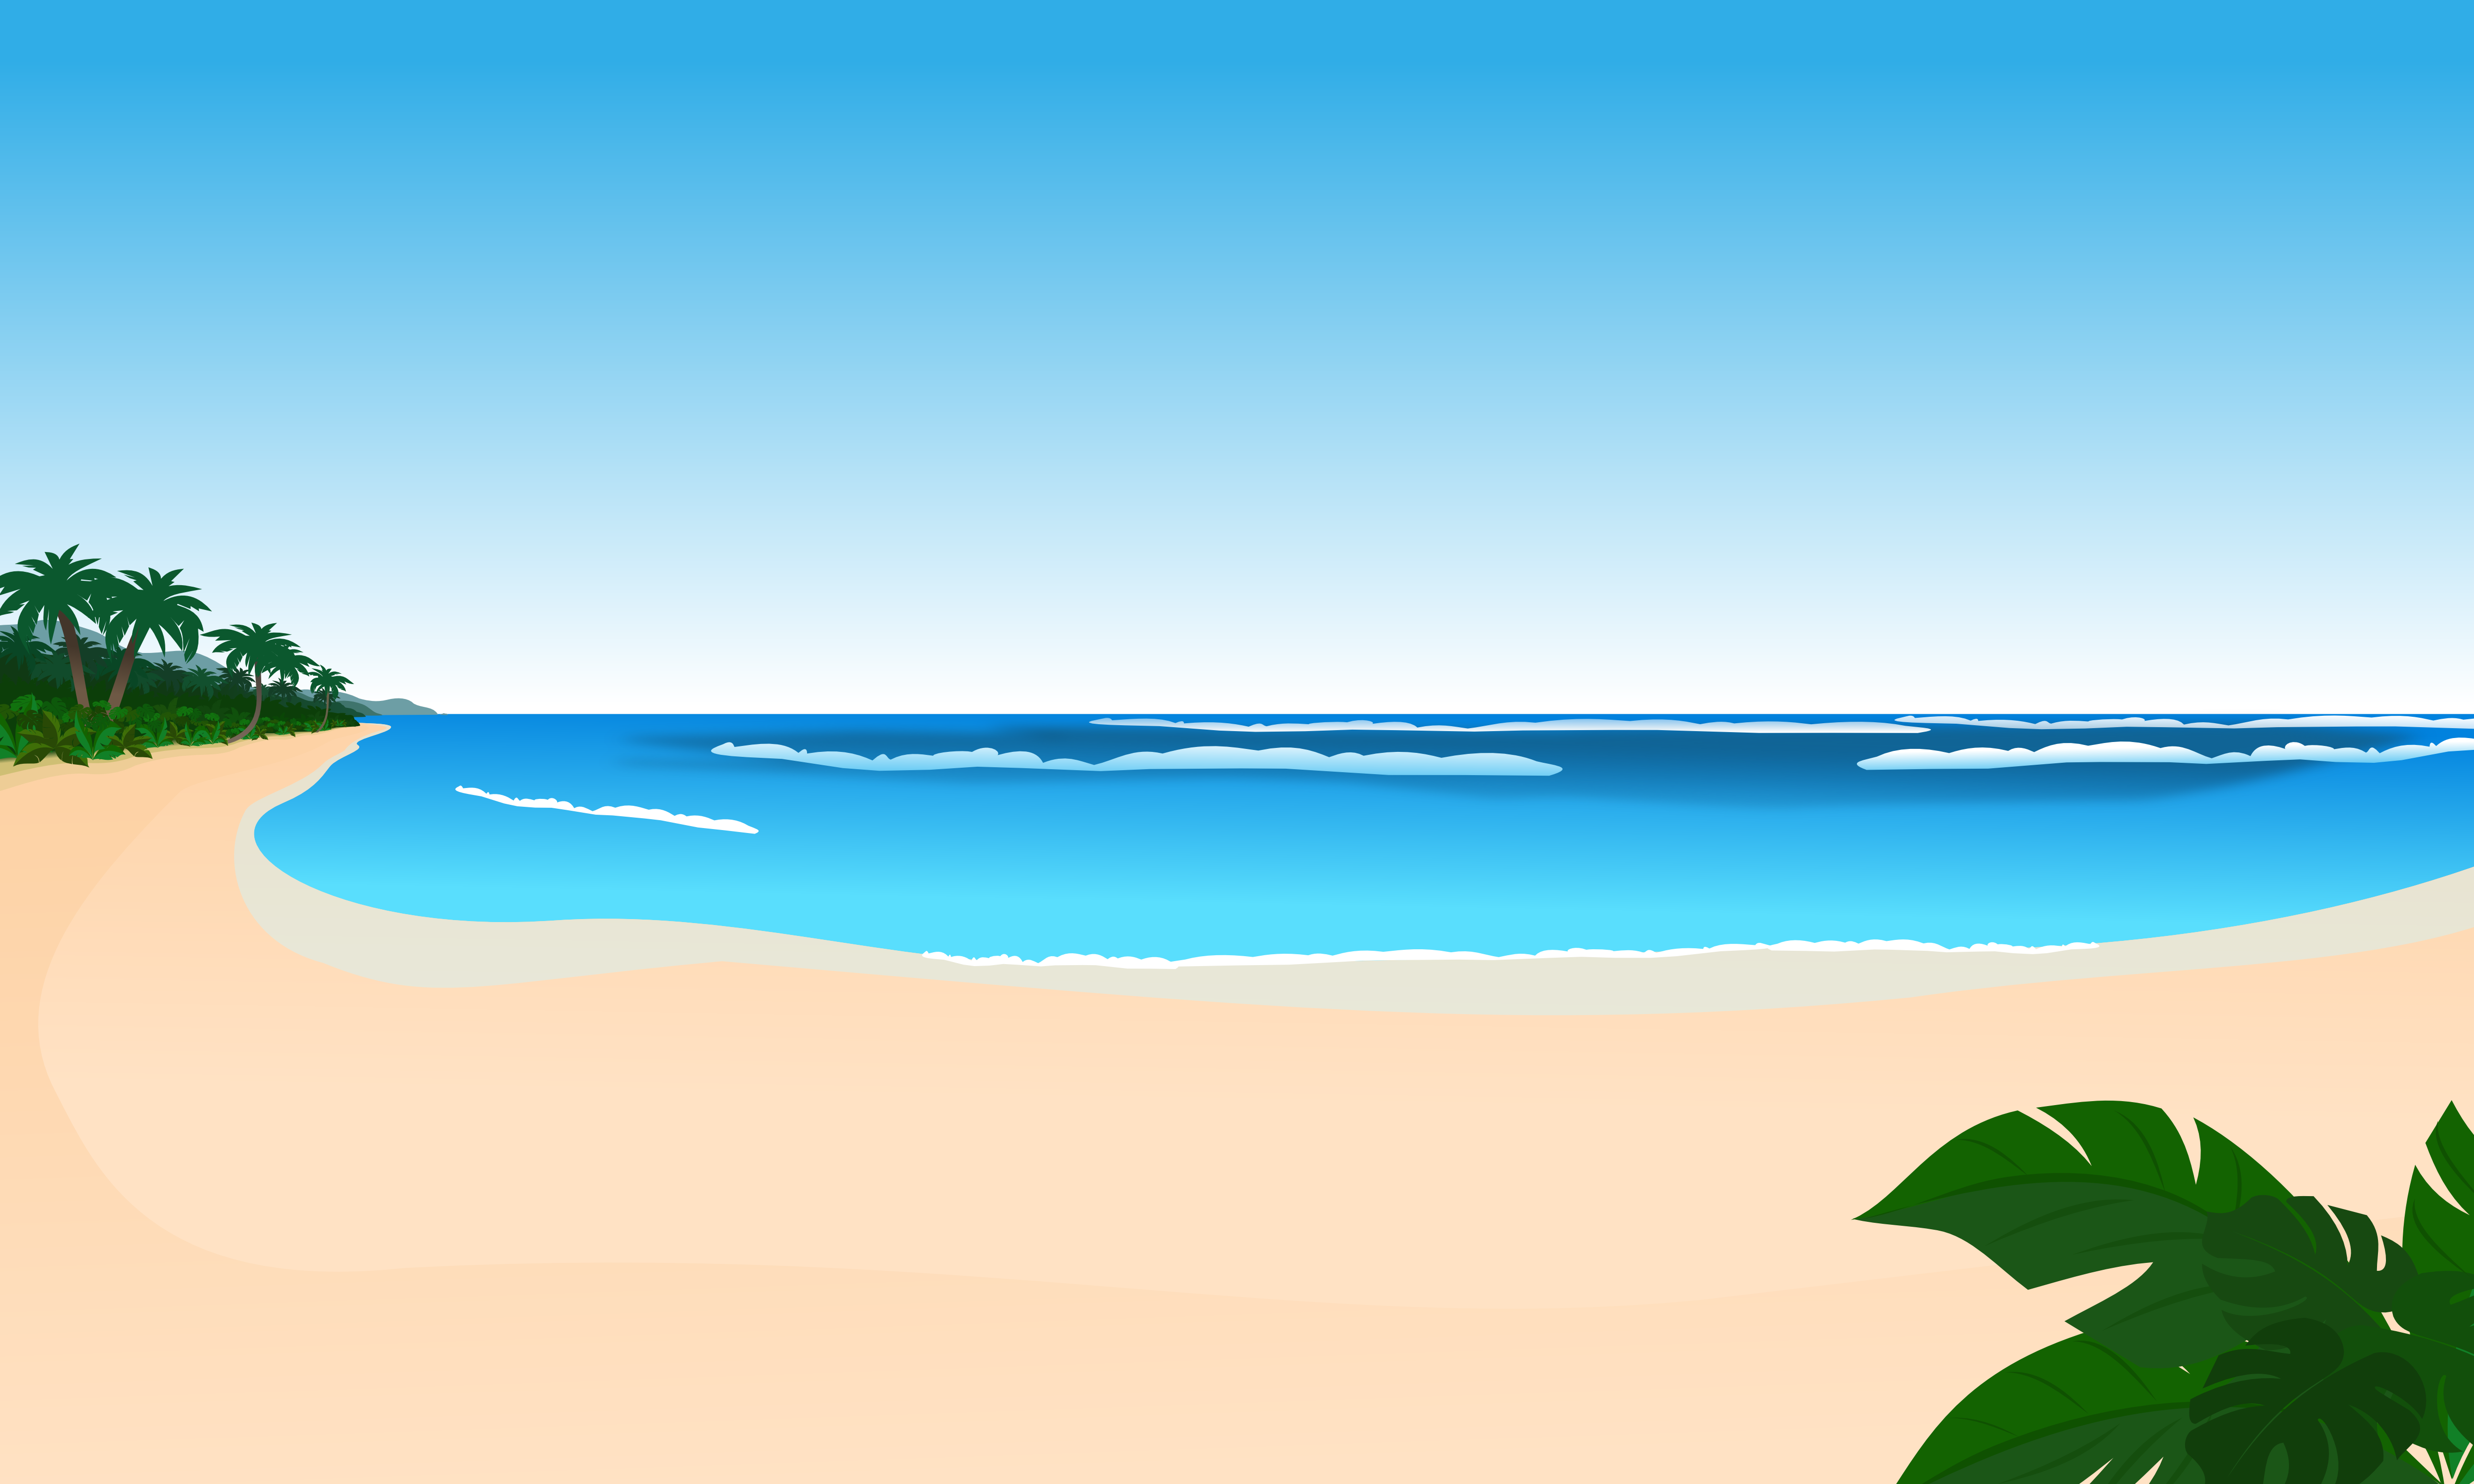 free beach cartoon clip art - photo #13